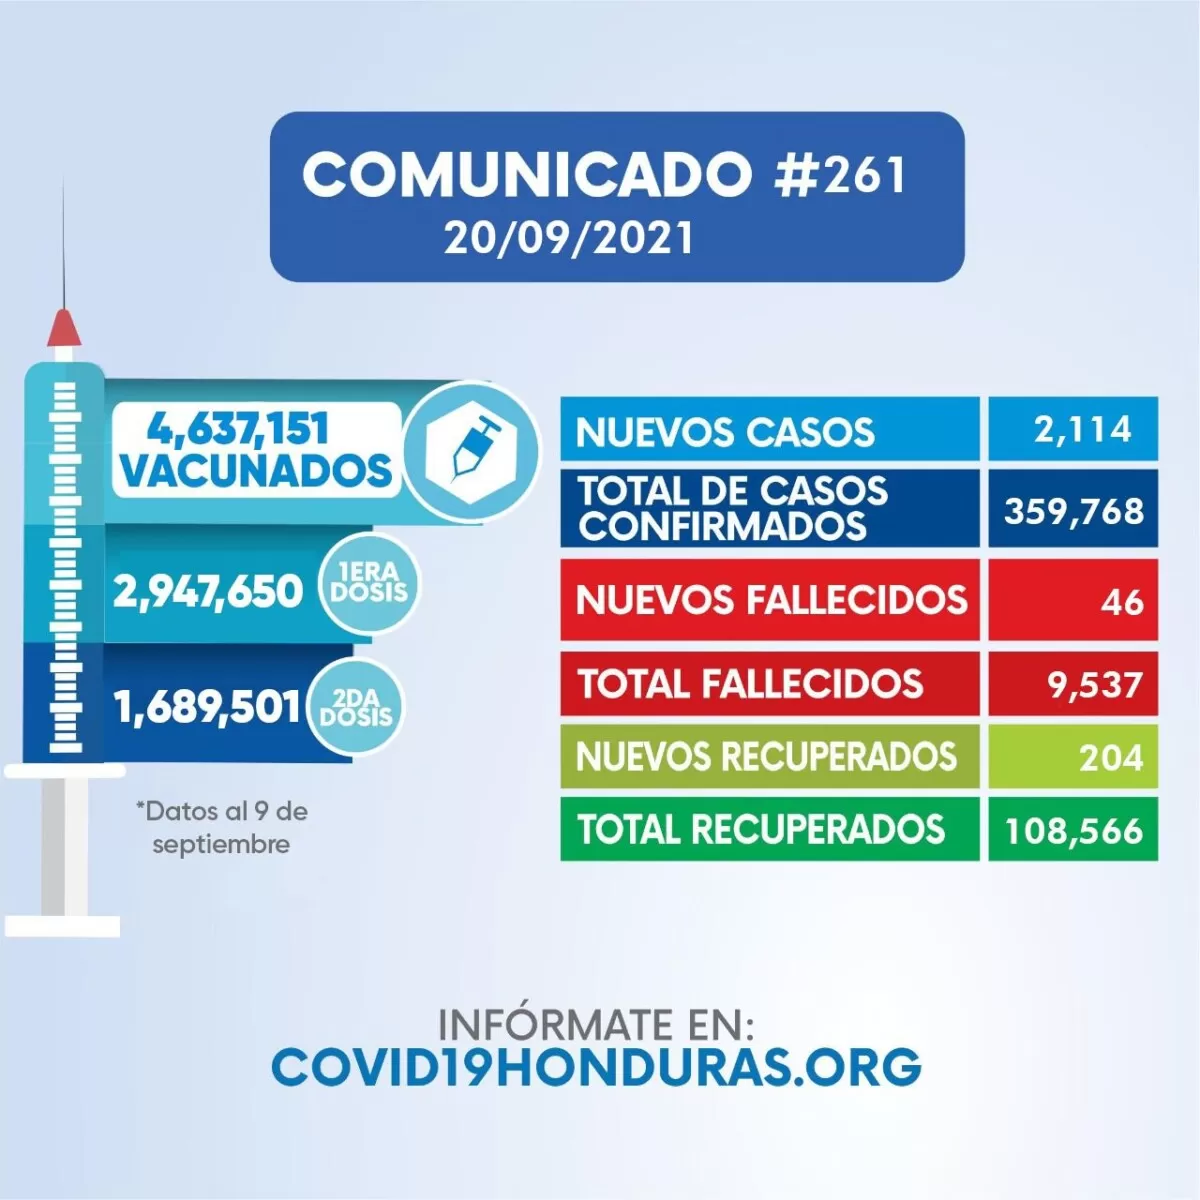 Casos de covid-19 aumentan a 359.768 al confirmarse otros 2.114 contagios